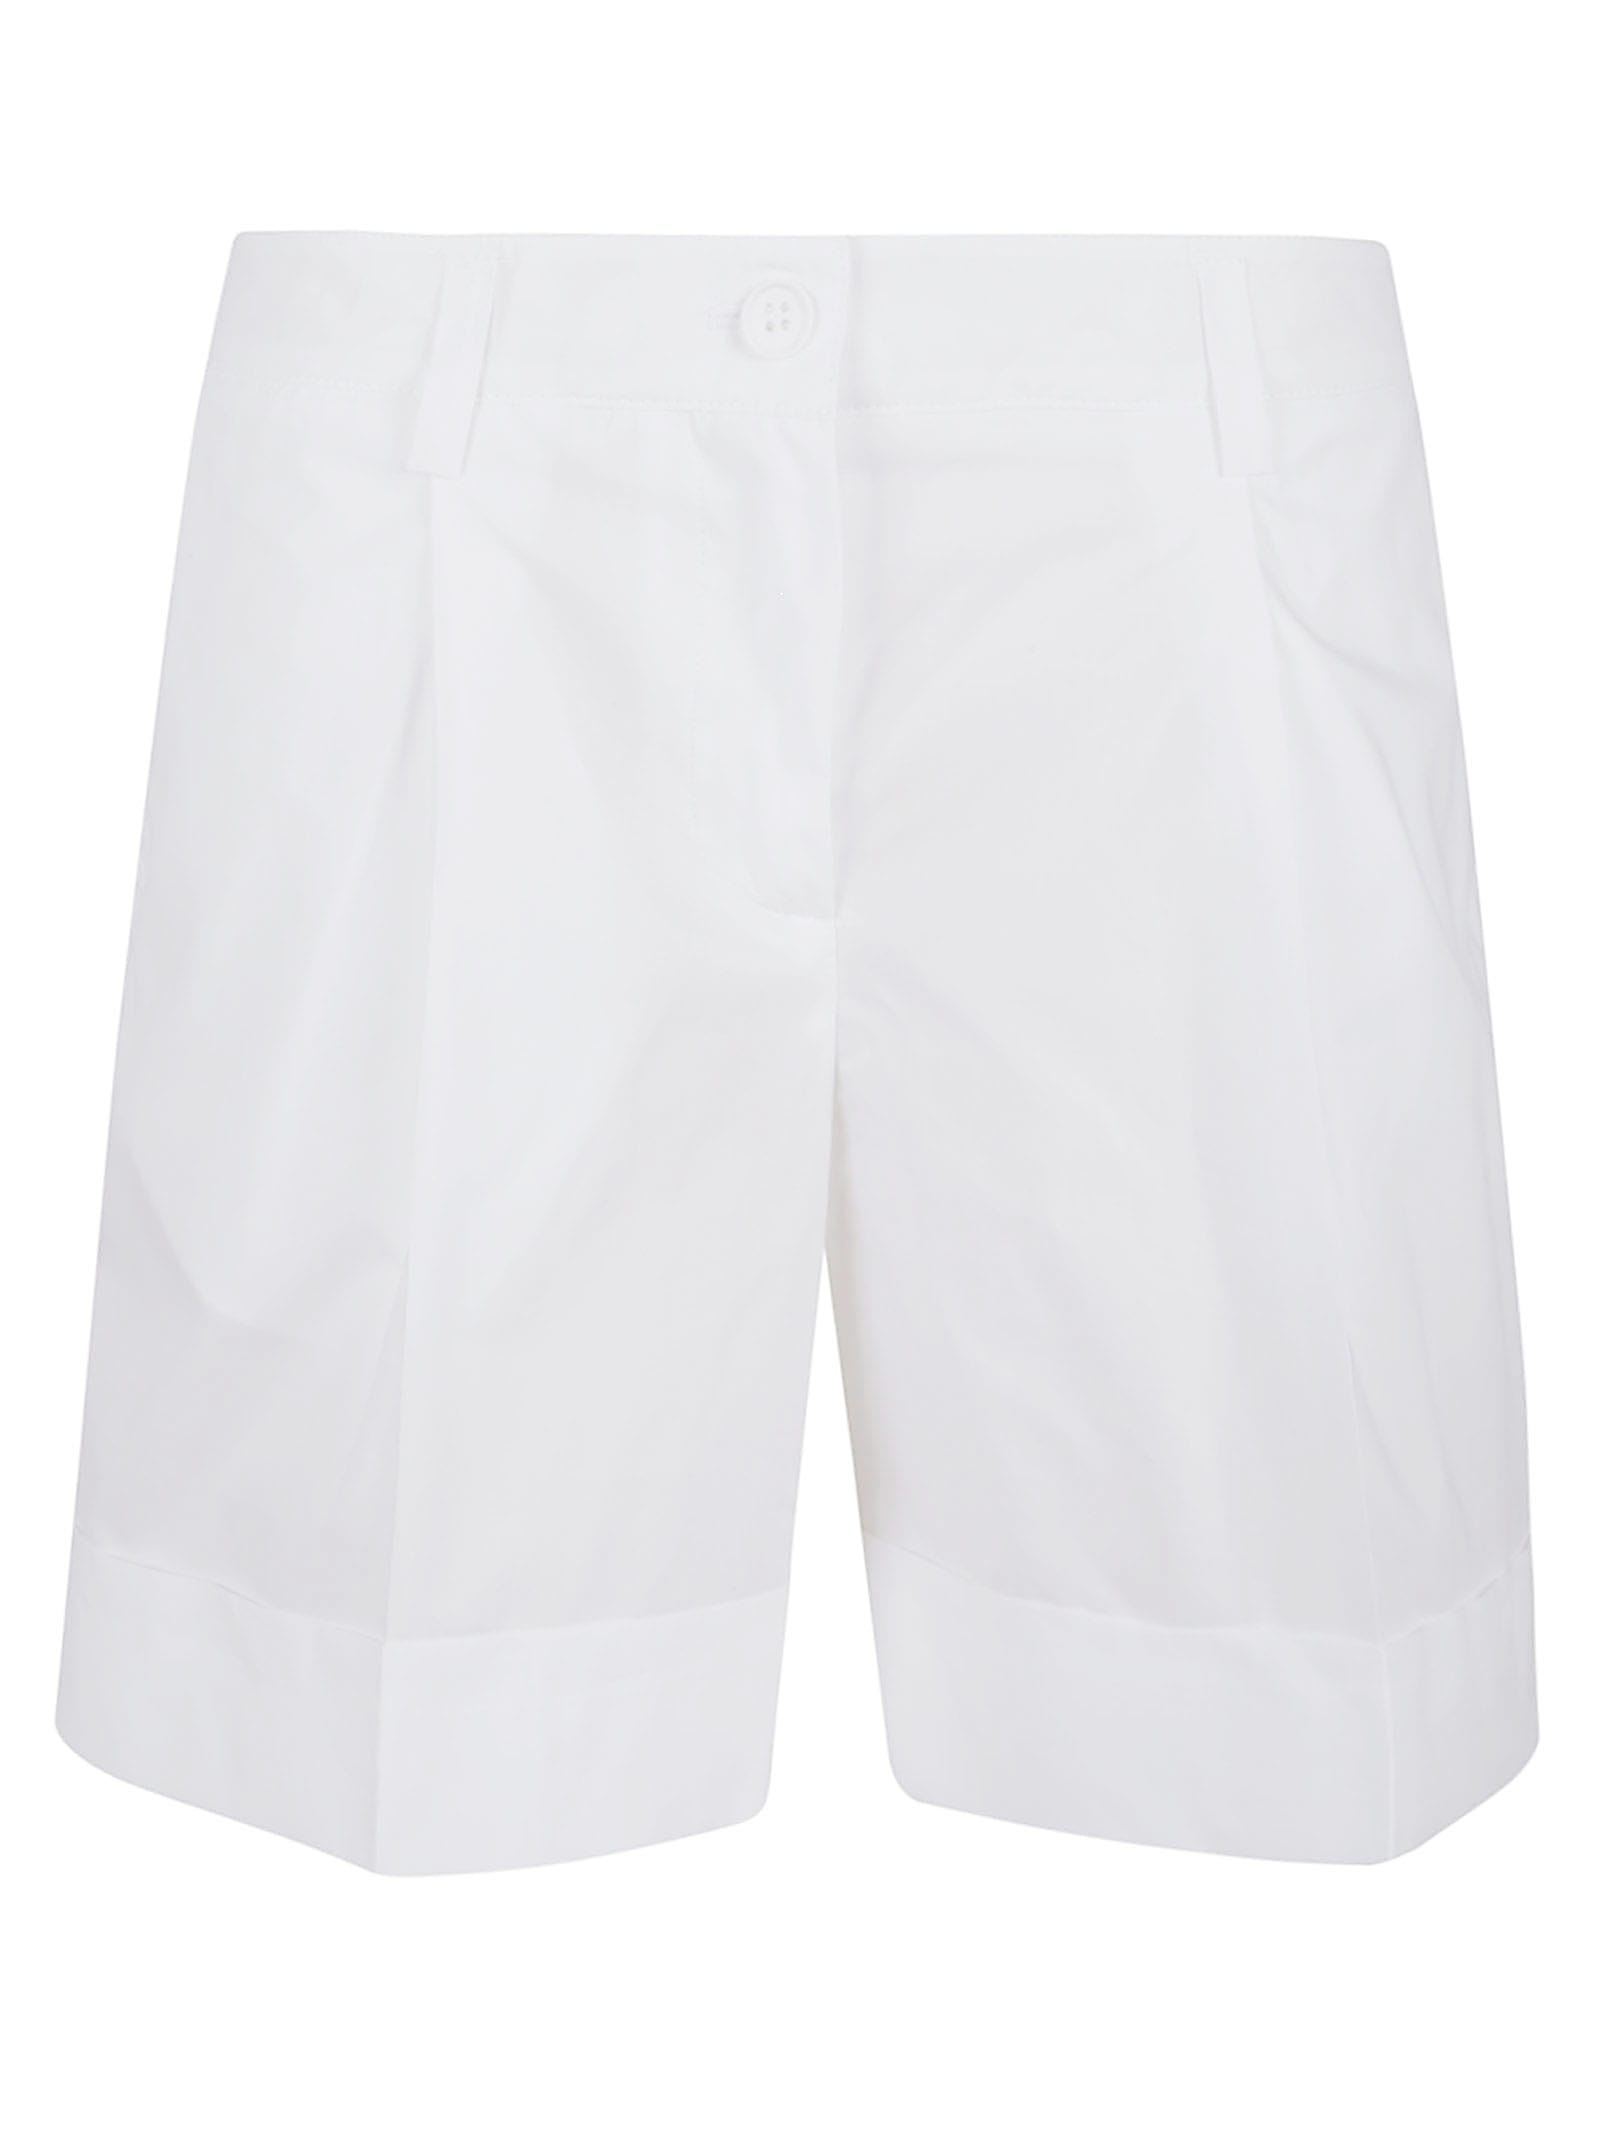 Parosh White Cotton Shorts